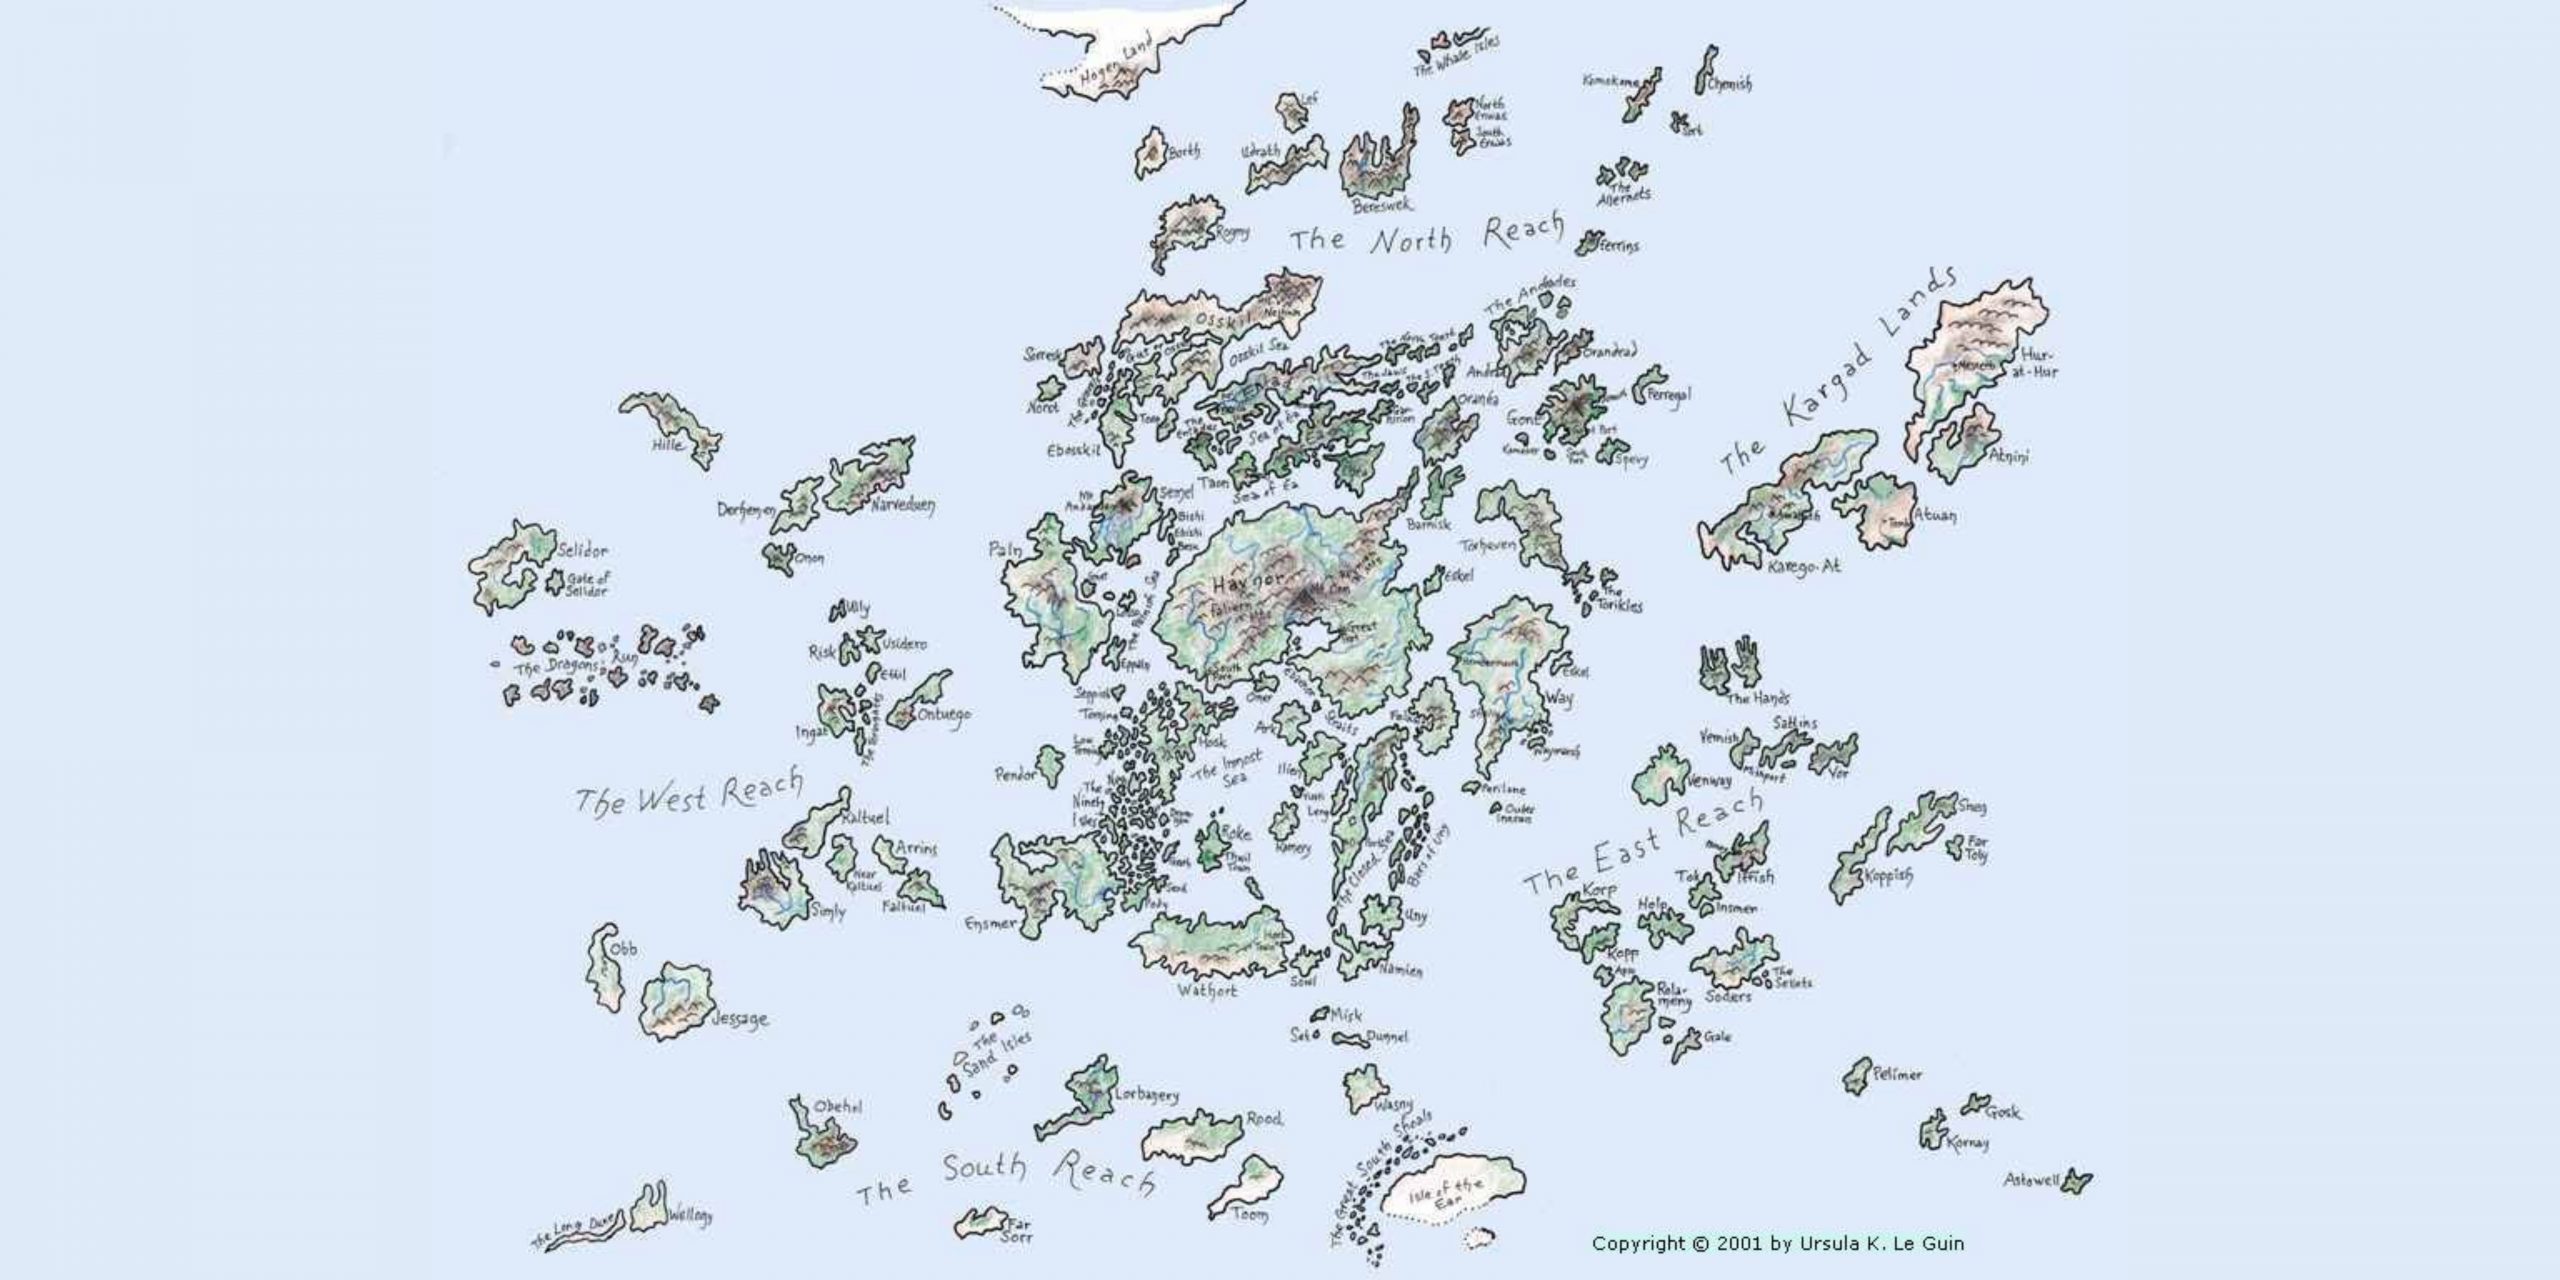 ursula k. le guin - yerdeniz serisi 1 – yerdeniz haritasi scaled